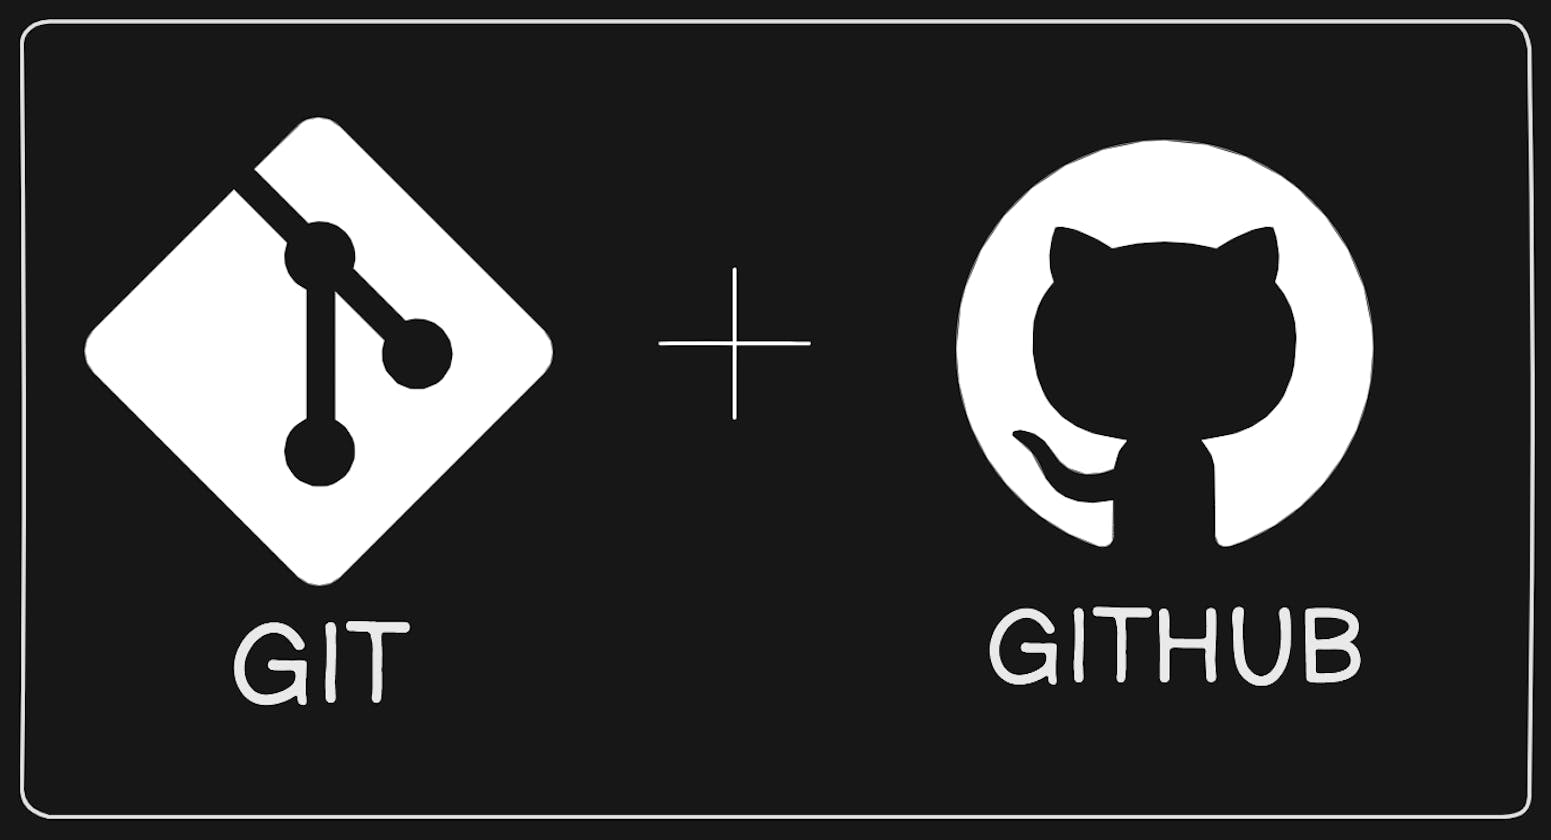 Day 8 Basic Git & GitHub for DevOps Engineers